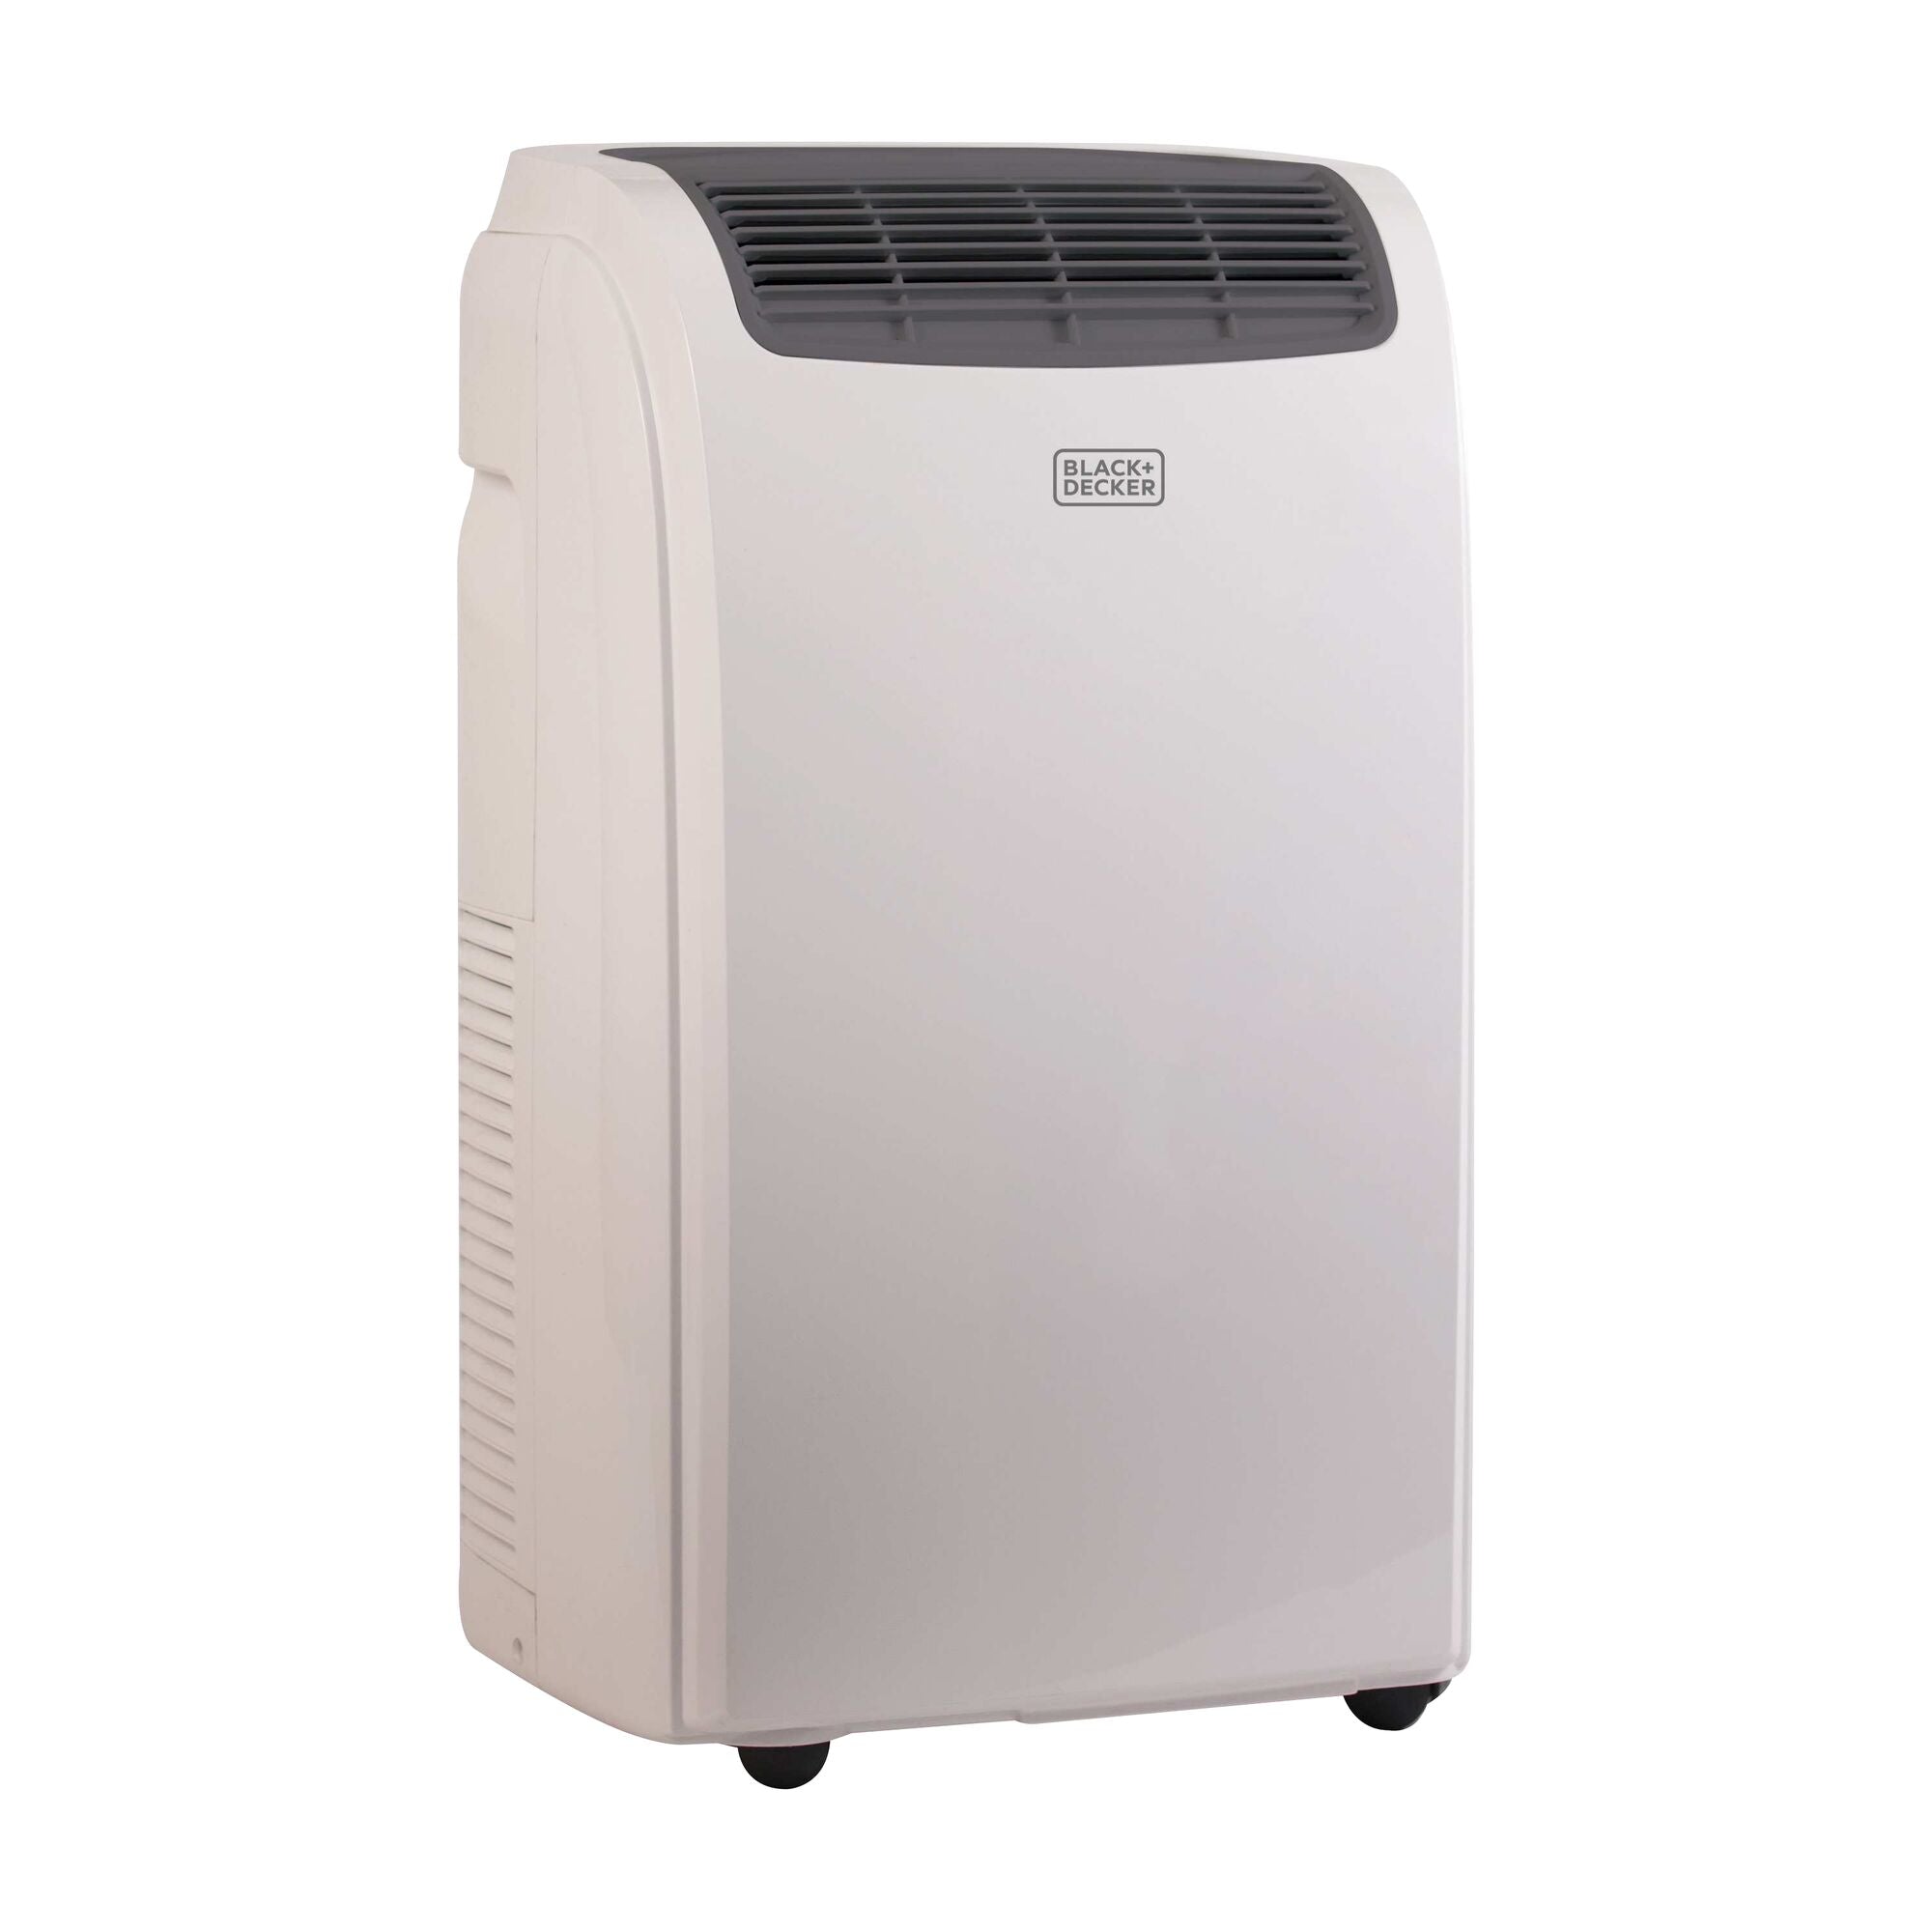 BLACK+DECKER BPACT08WT Portable Air Conditioner, 8,000 BTU, White ❄ Re